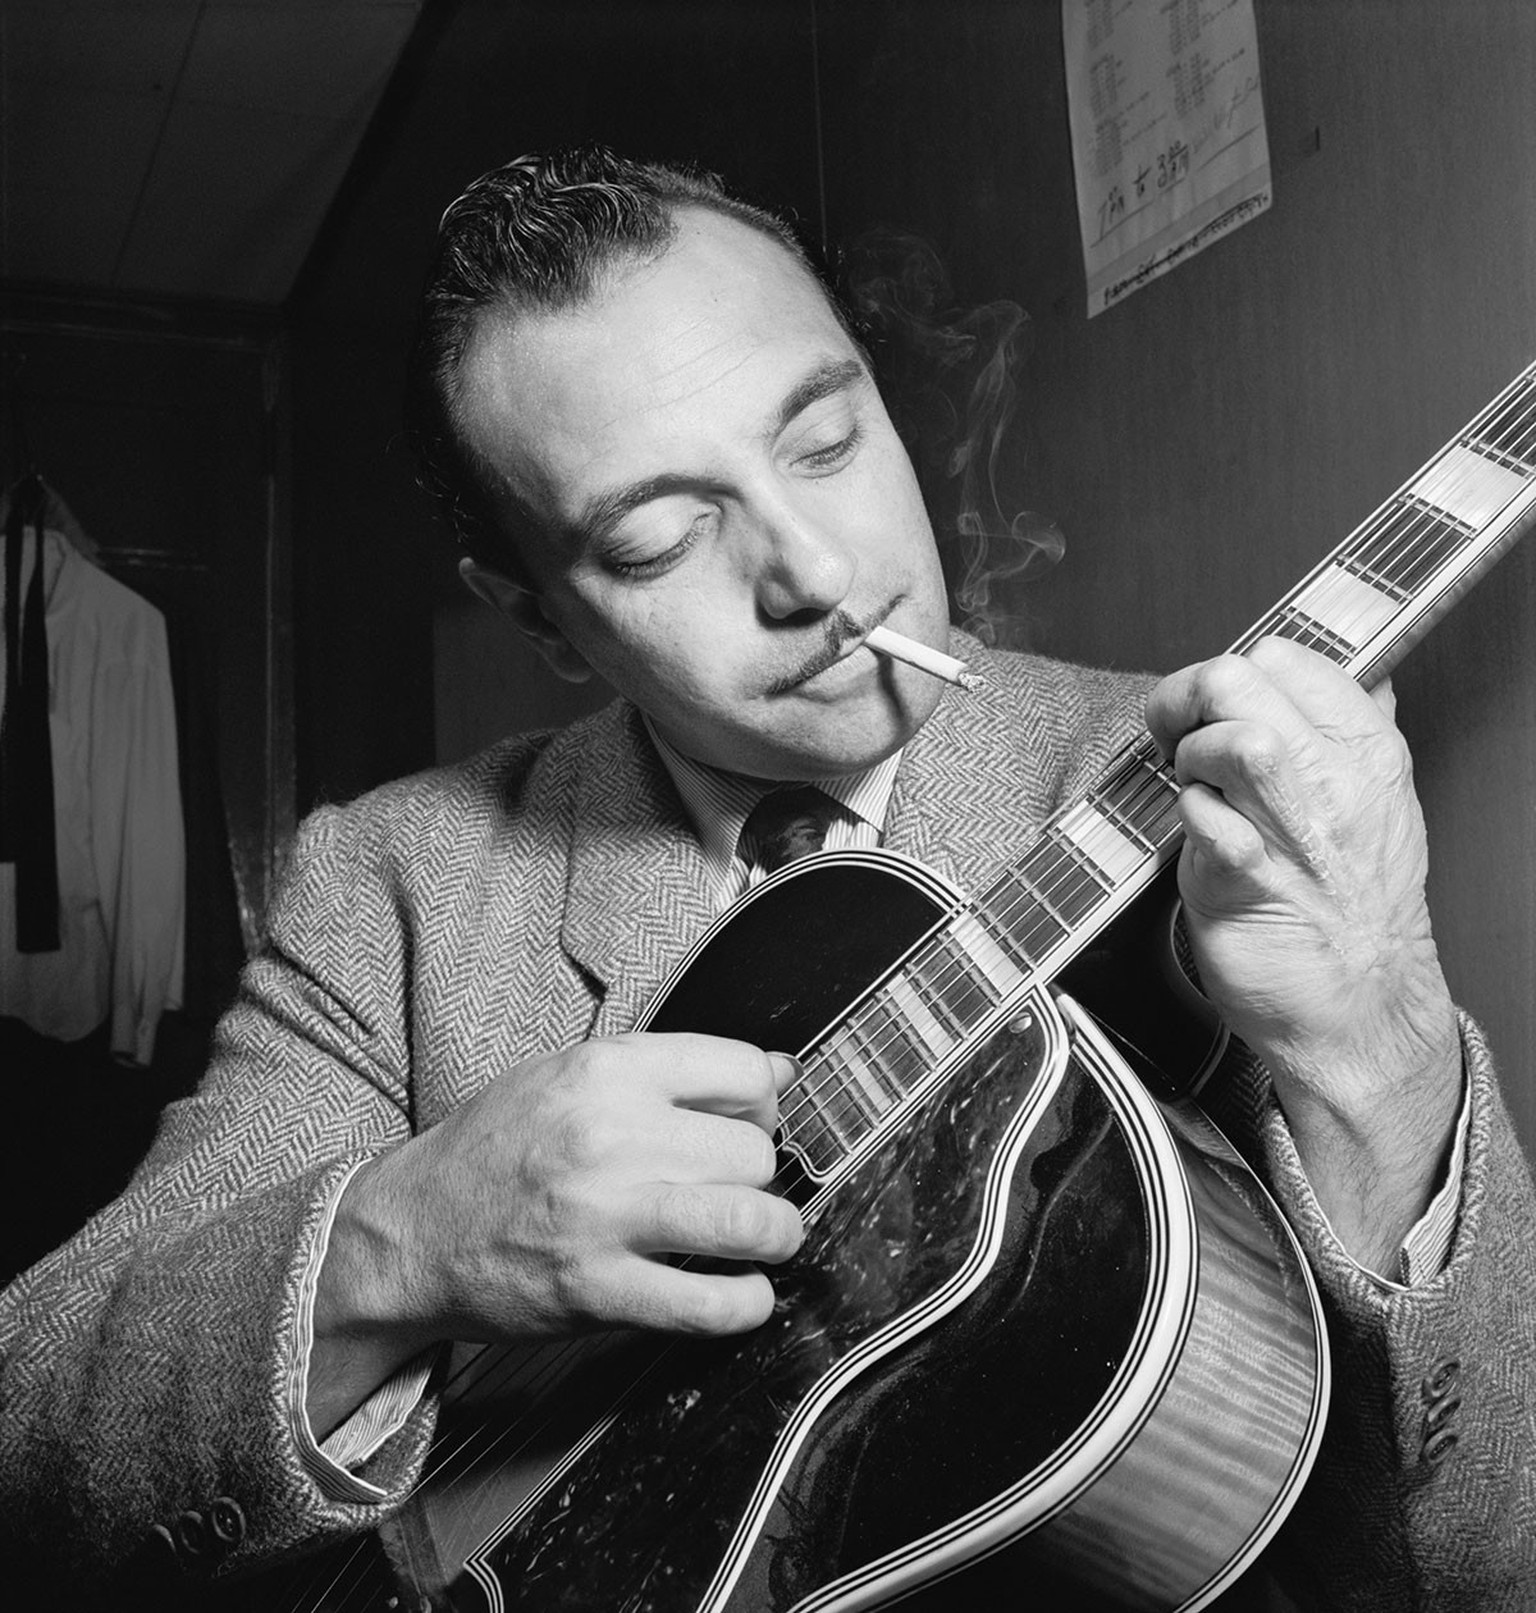 Django Reinhardt, aufgenommen im Aquarium Jazz Club in New York, um 1946.
https://upload.wikimedia.org/wikipedia/commons/f/f5/Django_Reinhardt_%28Gottlieb_07301%29.jpg